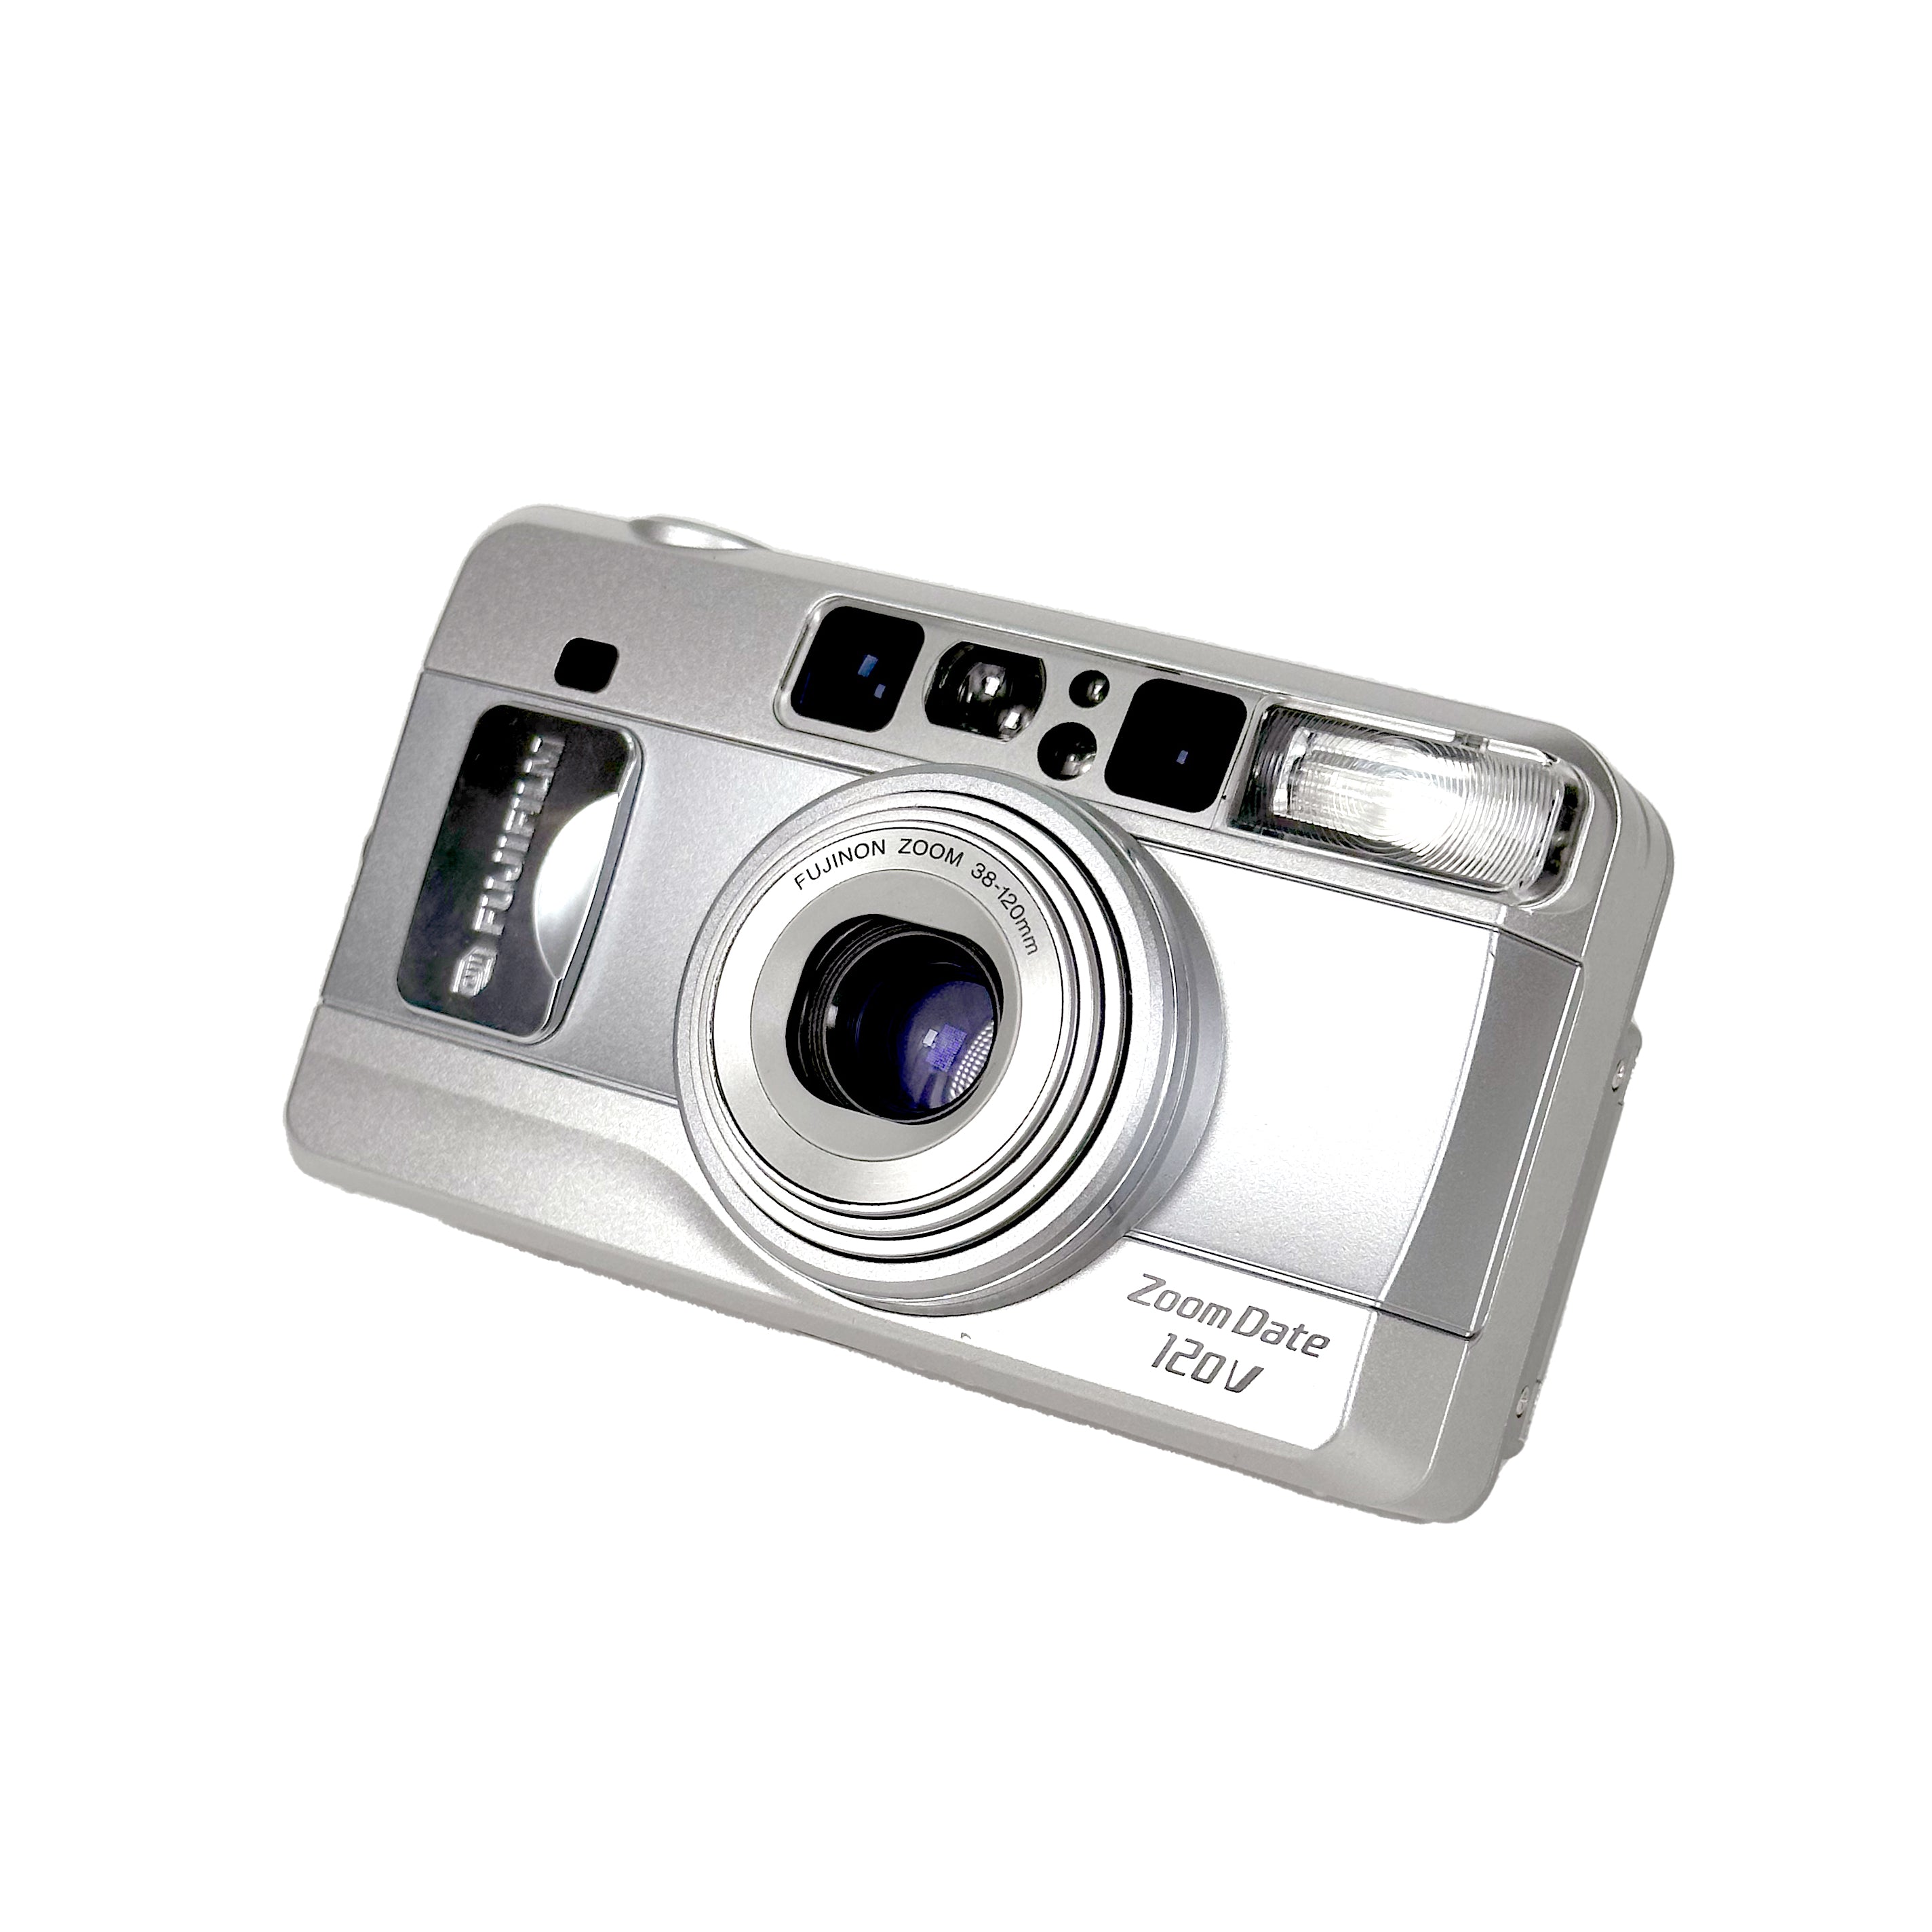 Fujifilm Zoom Date 120 V – Retro Camera Shop